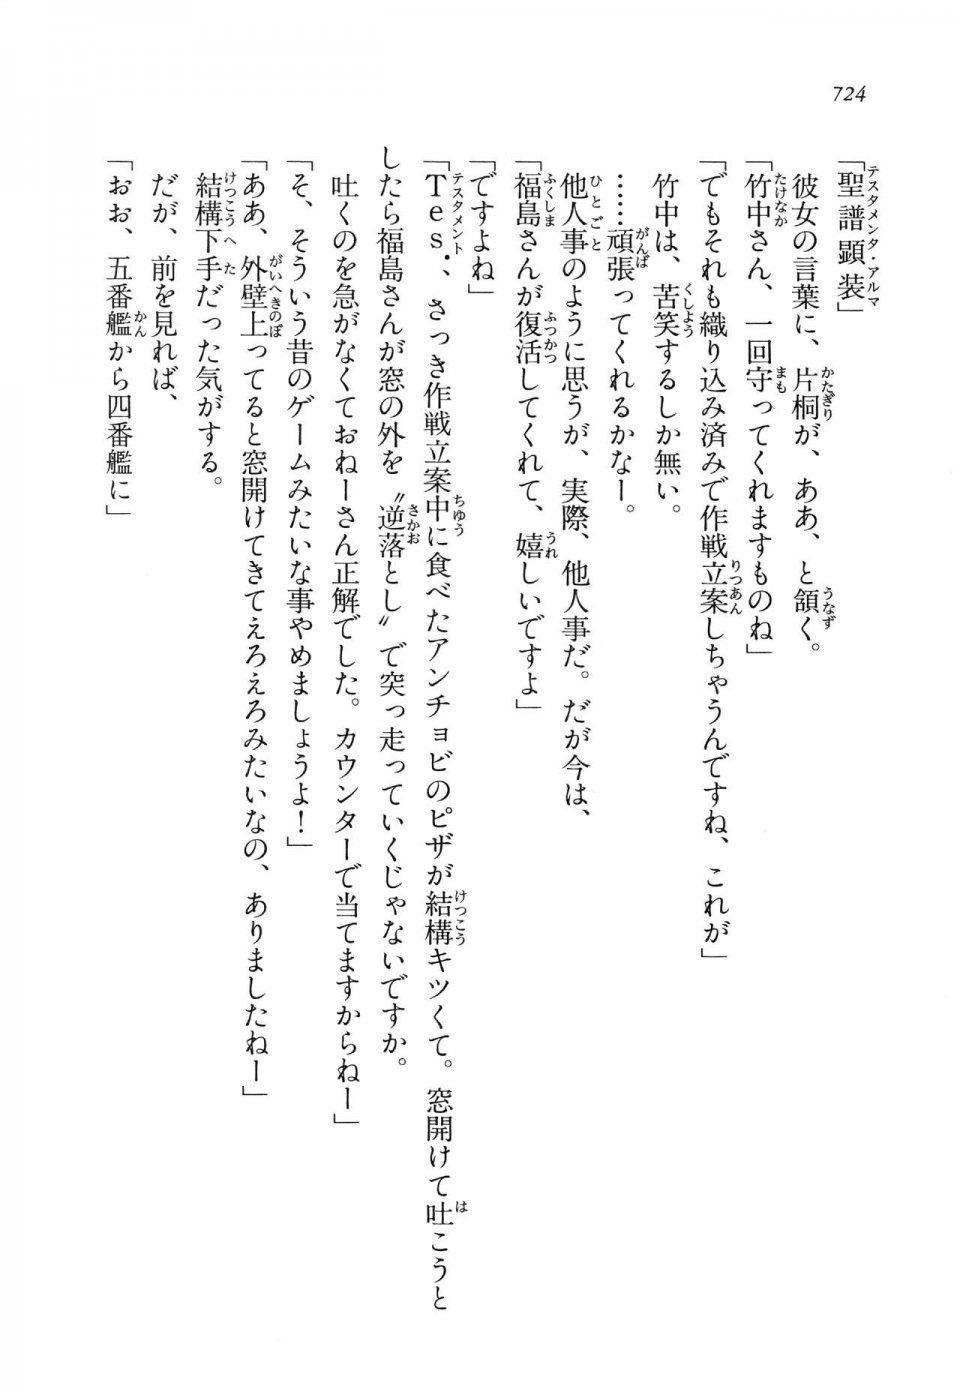 Kyoukai Senjou no Horizon LN Vol 14(6B) - Photo #724